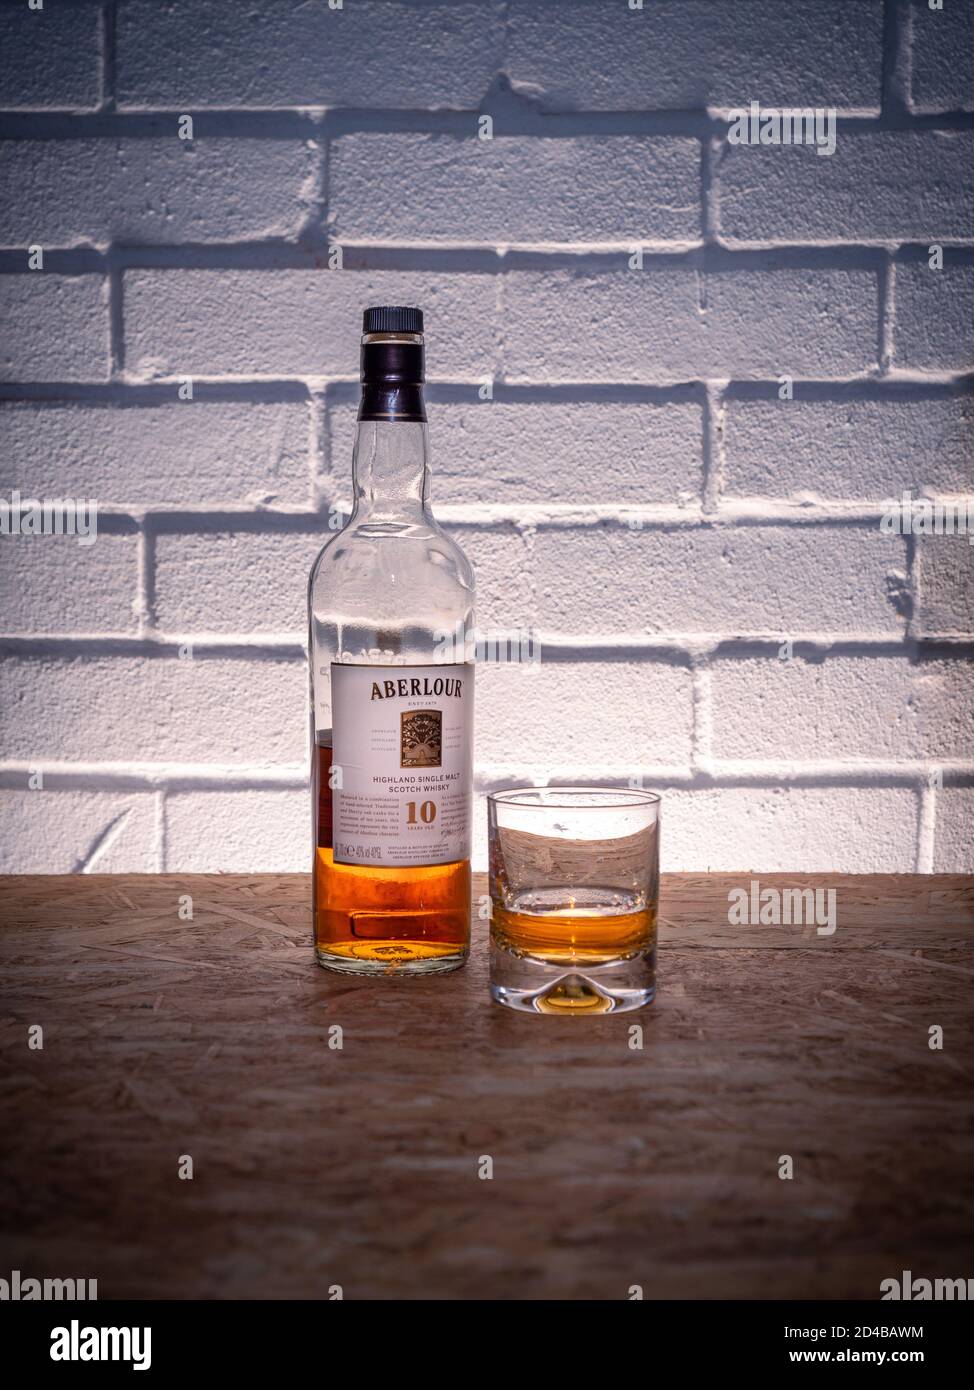 Una botella de whisky escocés medio llena del Aberlour destilería con un cristal sobre un fondo de pared de ladrillo Foto de stock